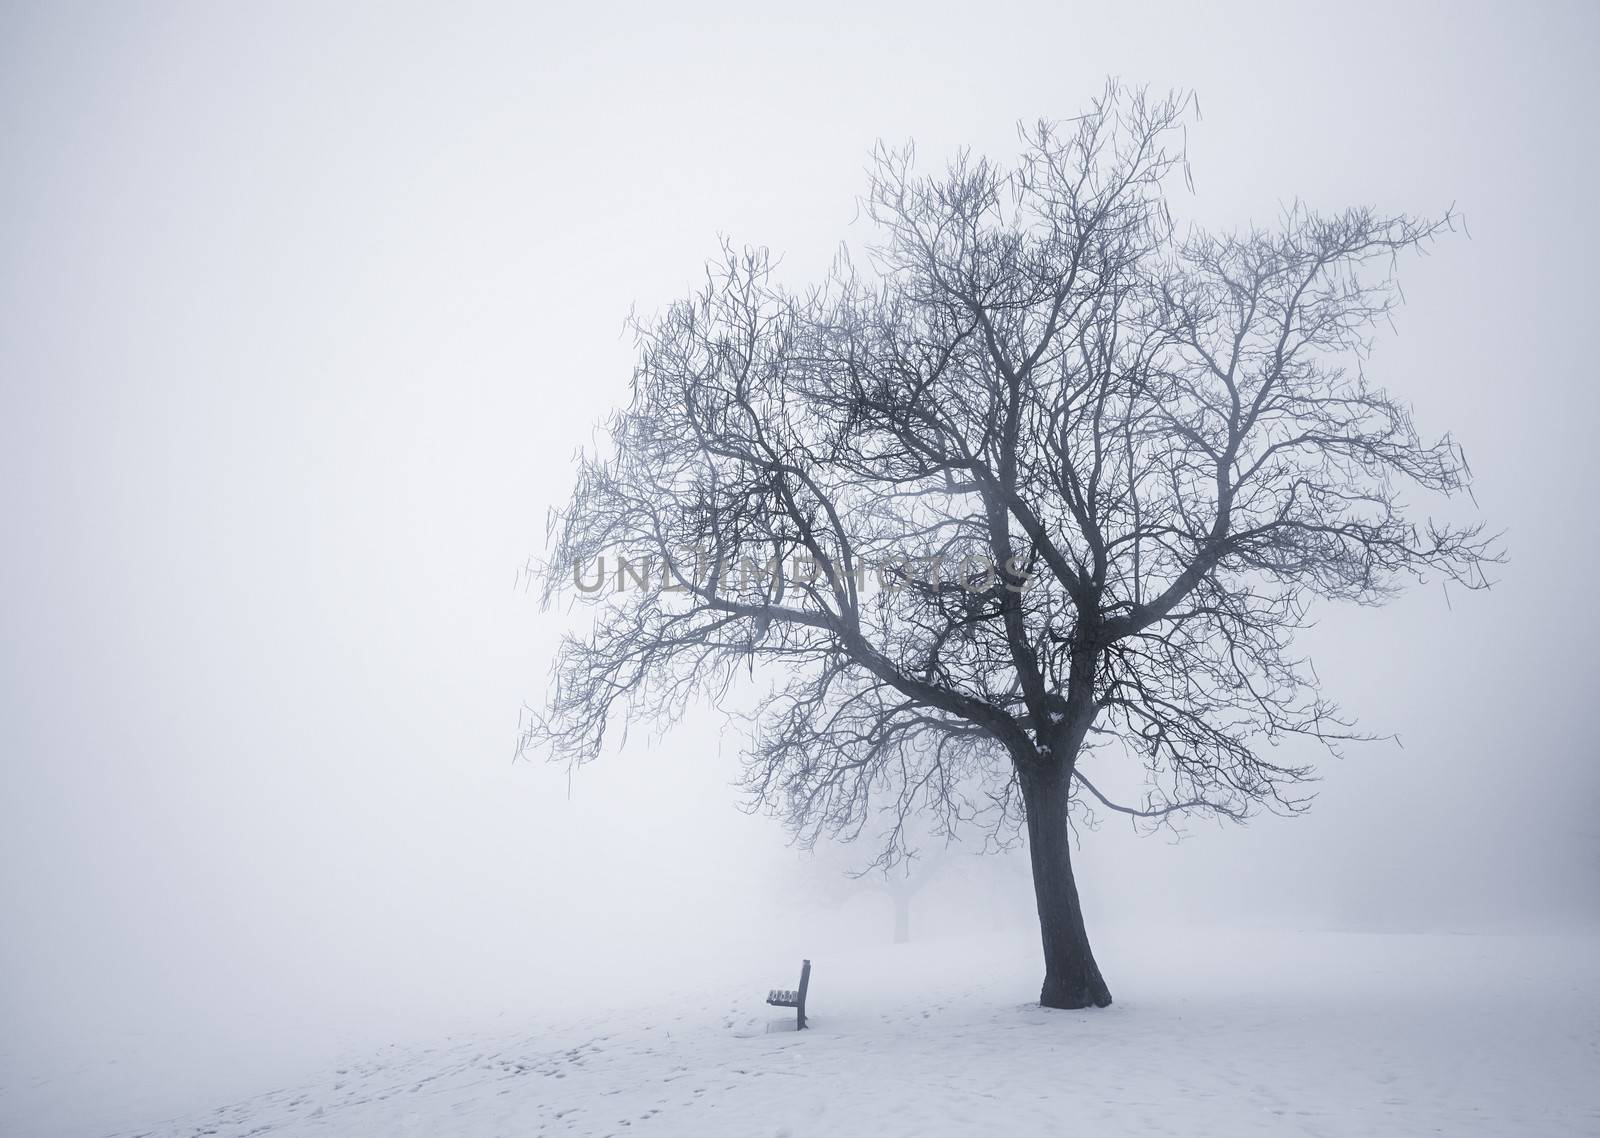 Winter tree in fog by elenathewise